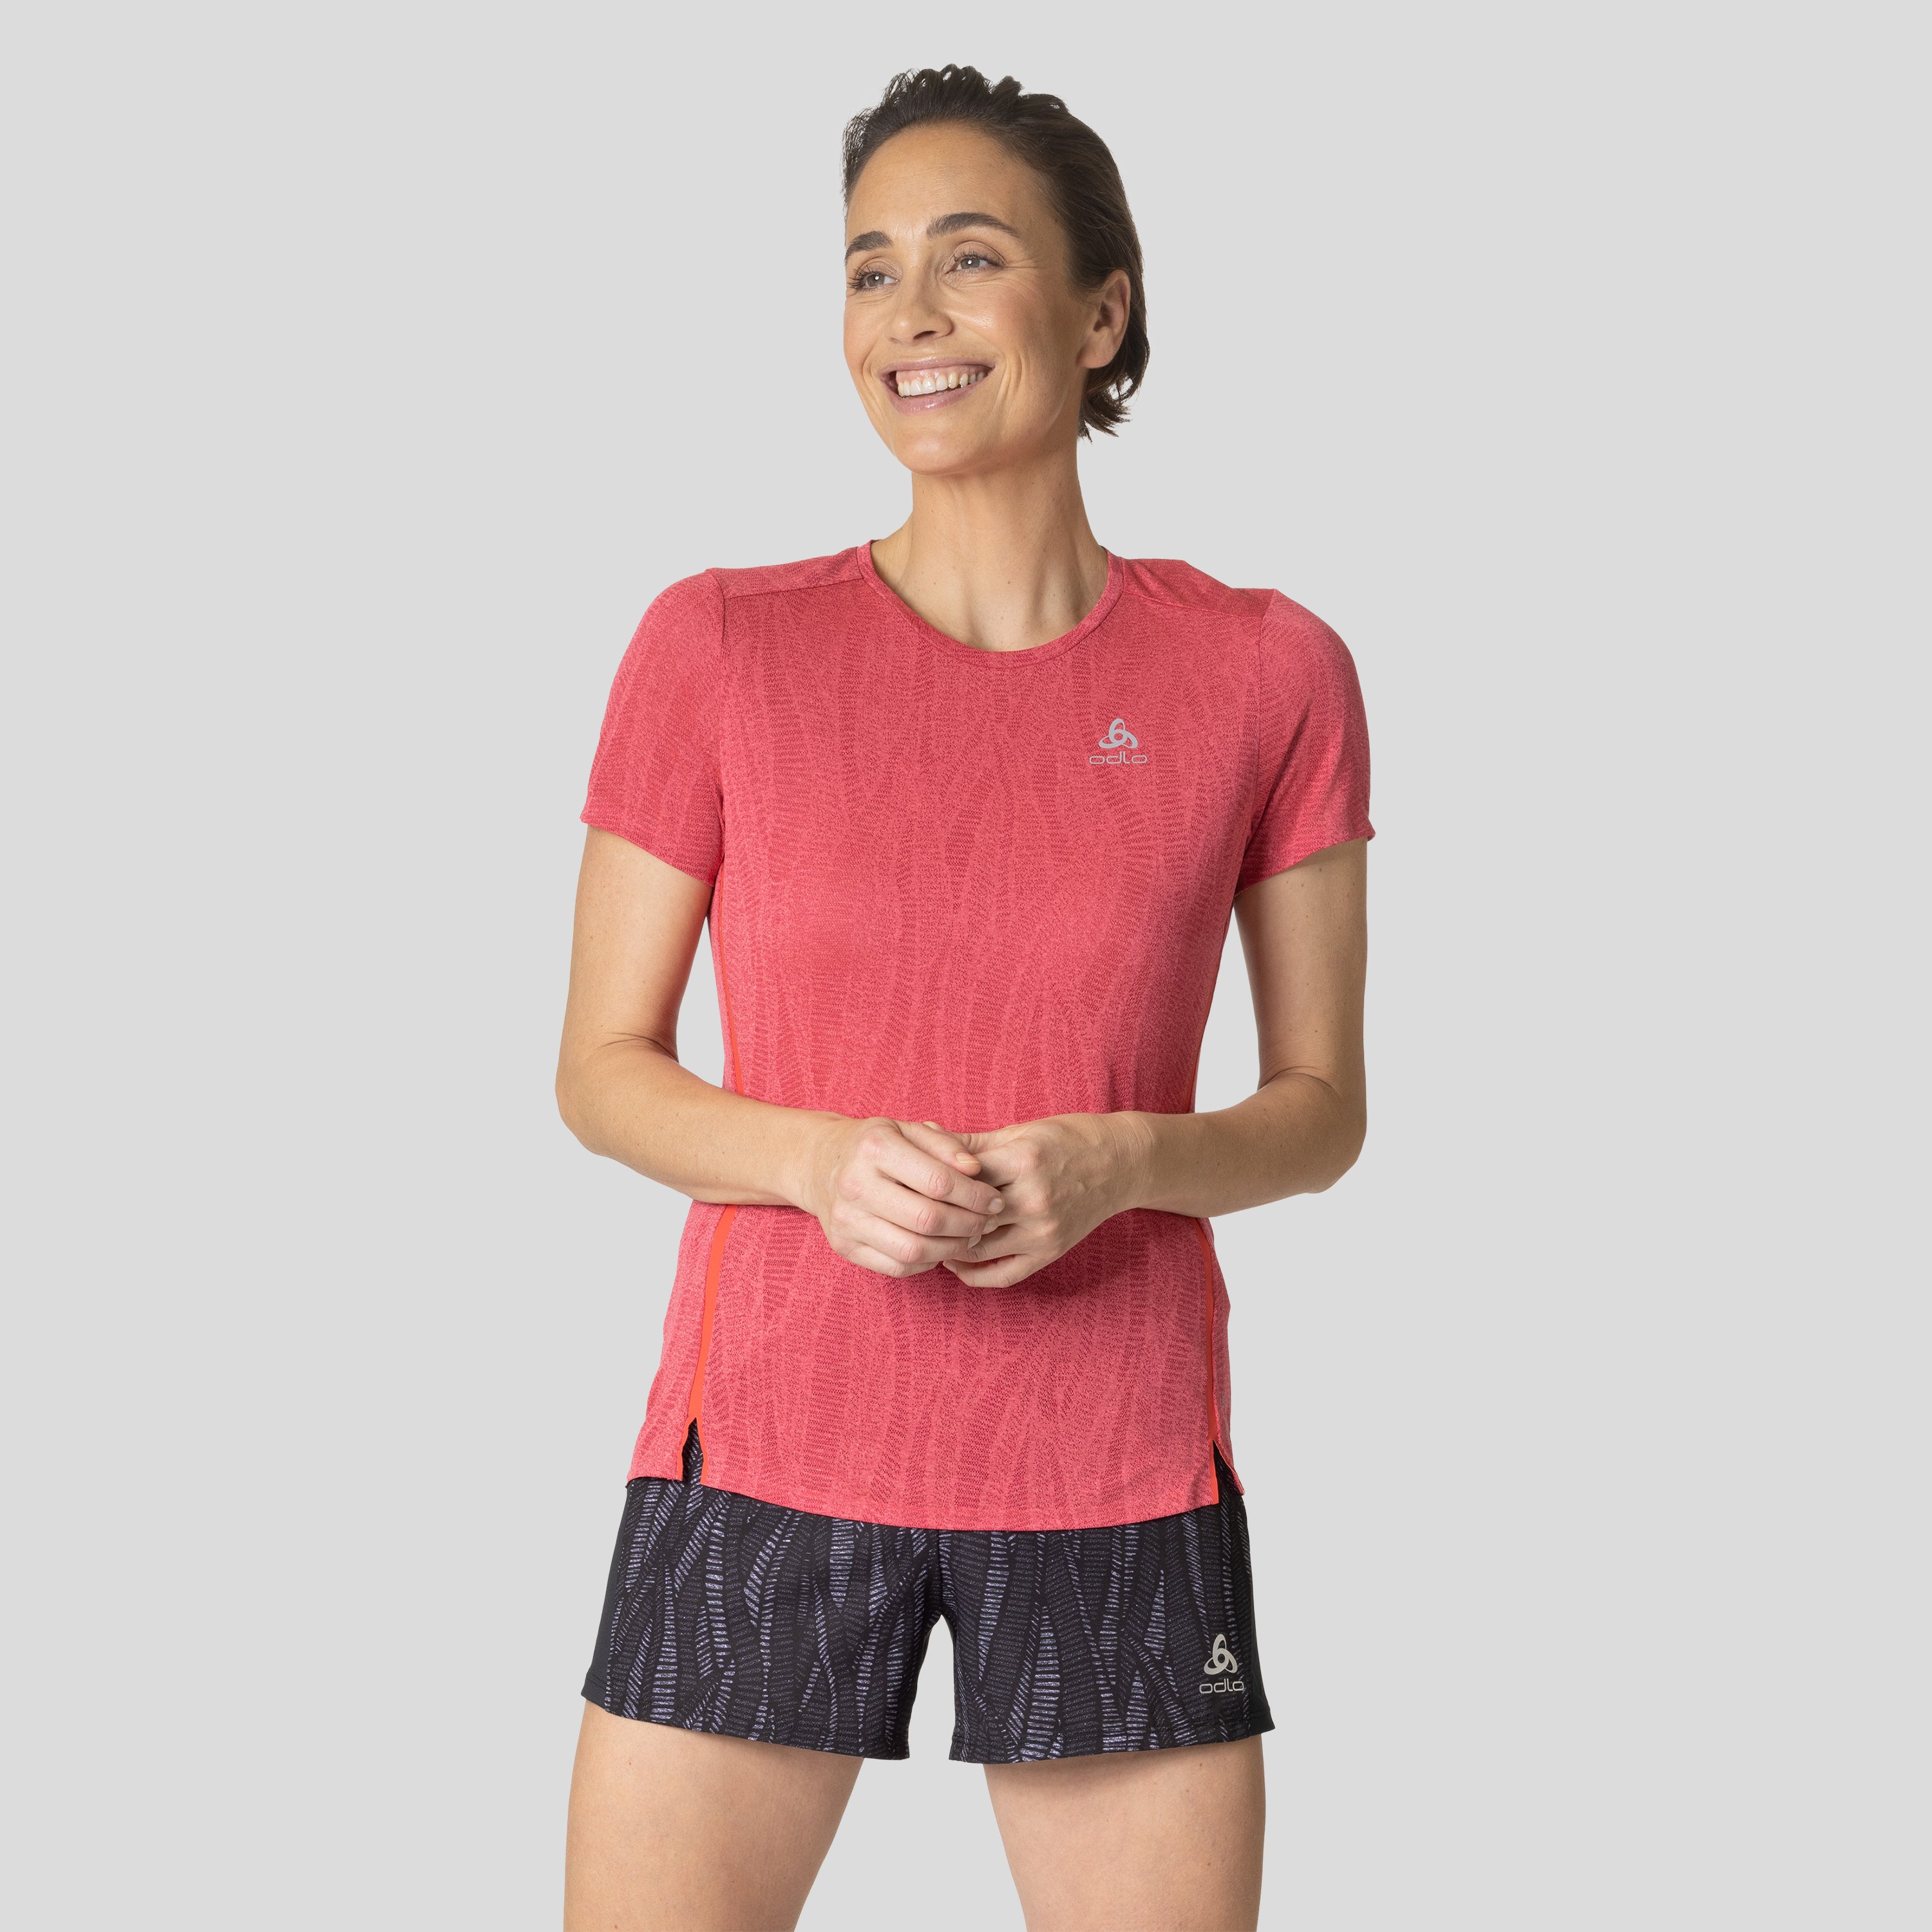 ODLO Zeroweight Engineered Chill-Tec Laufshirt für Damen, S, rot